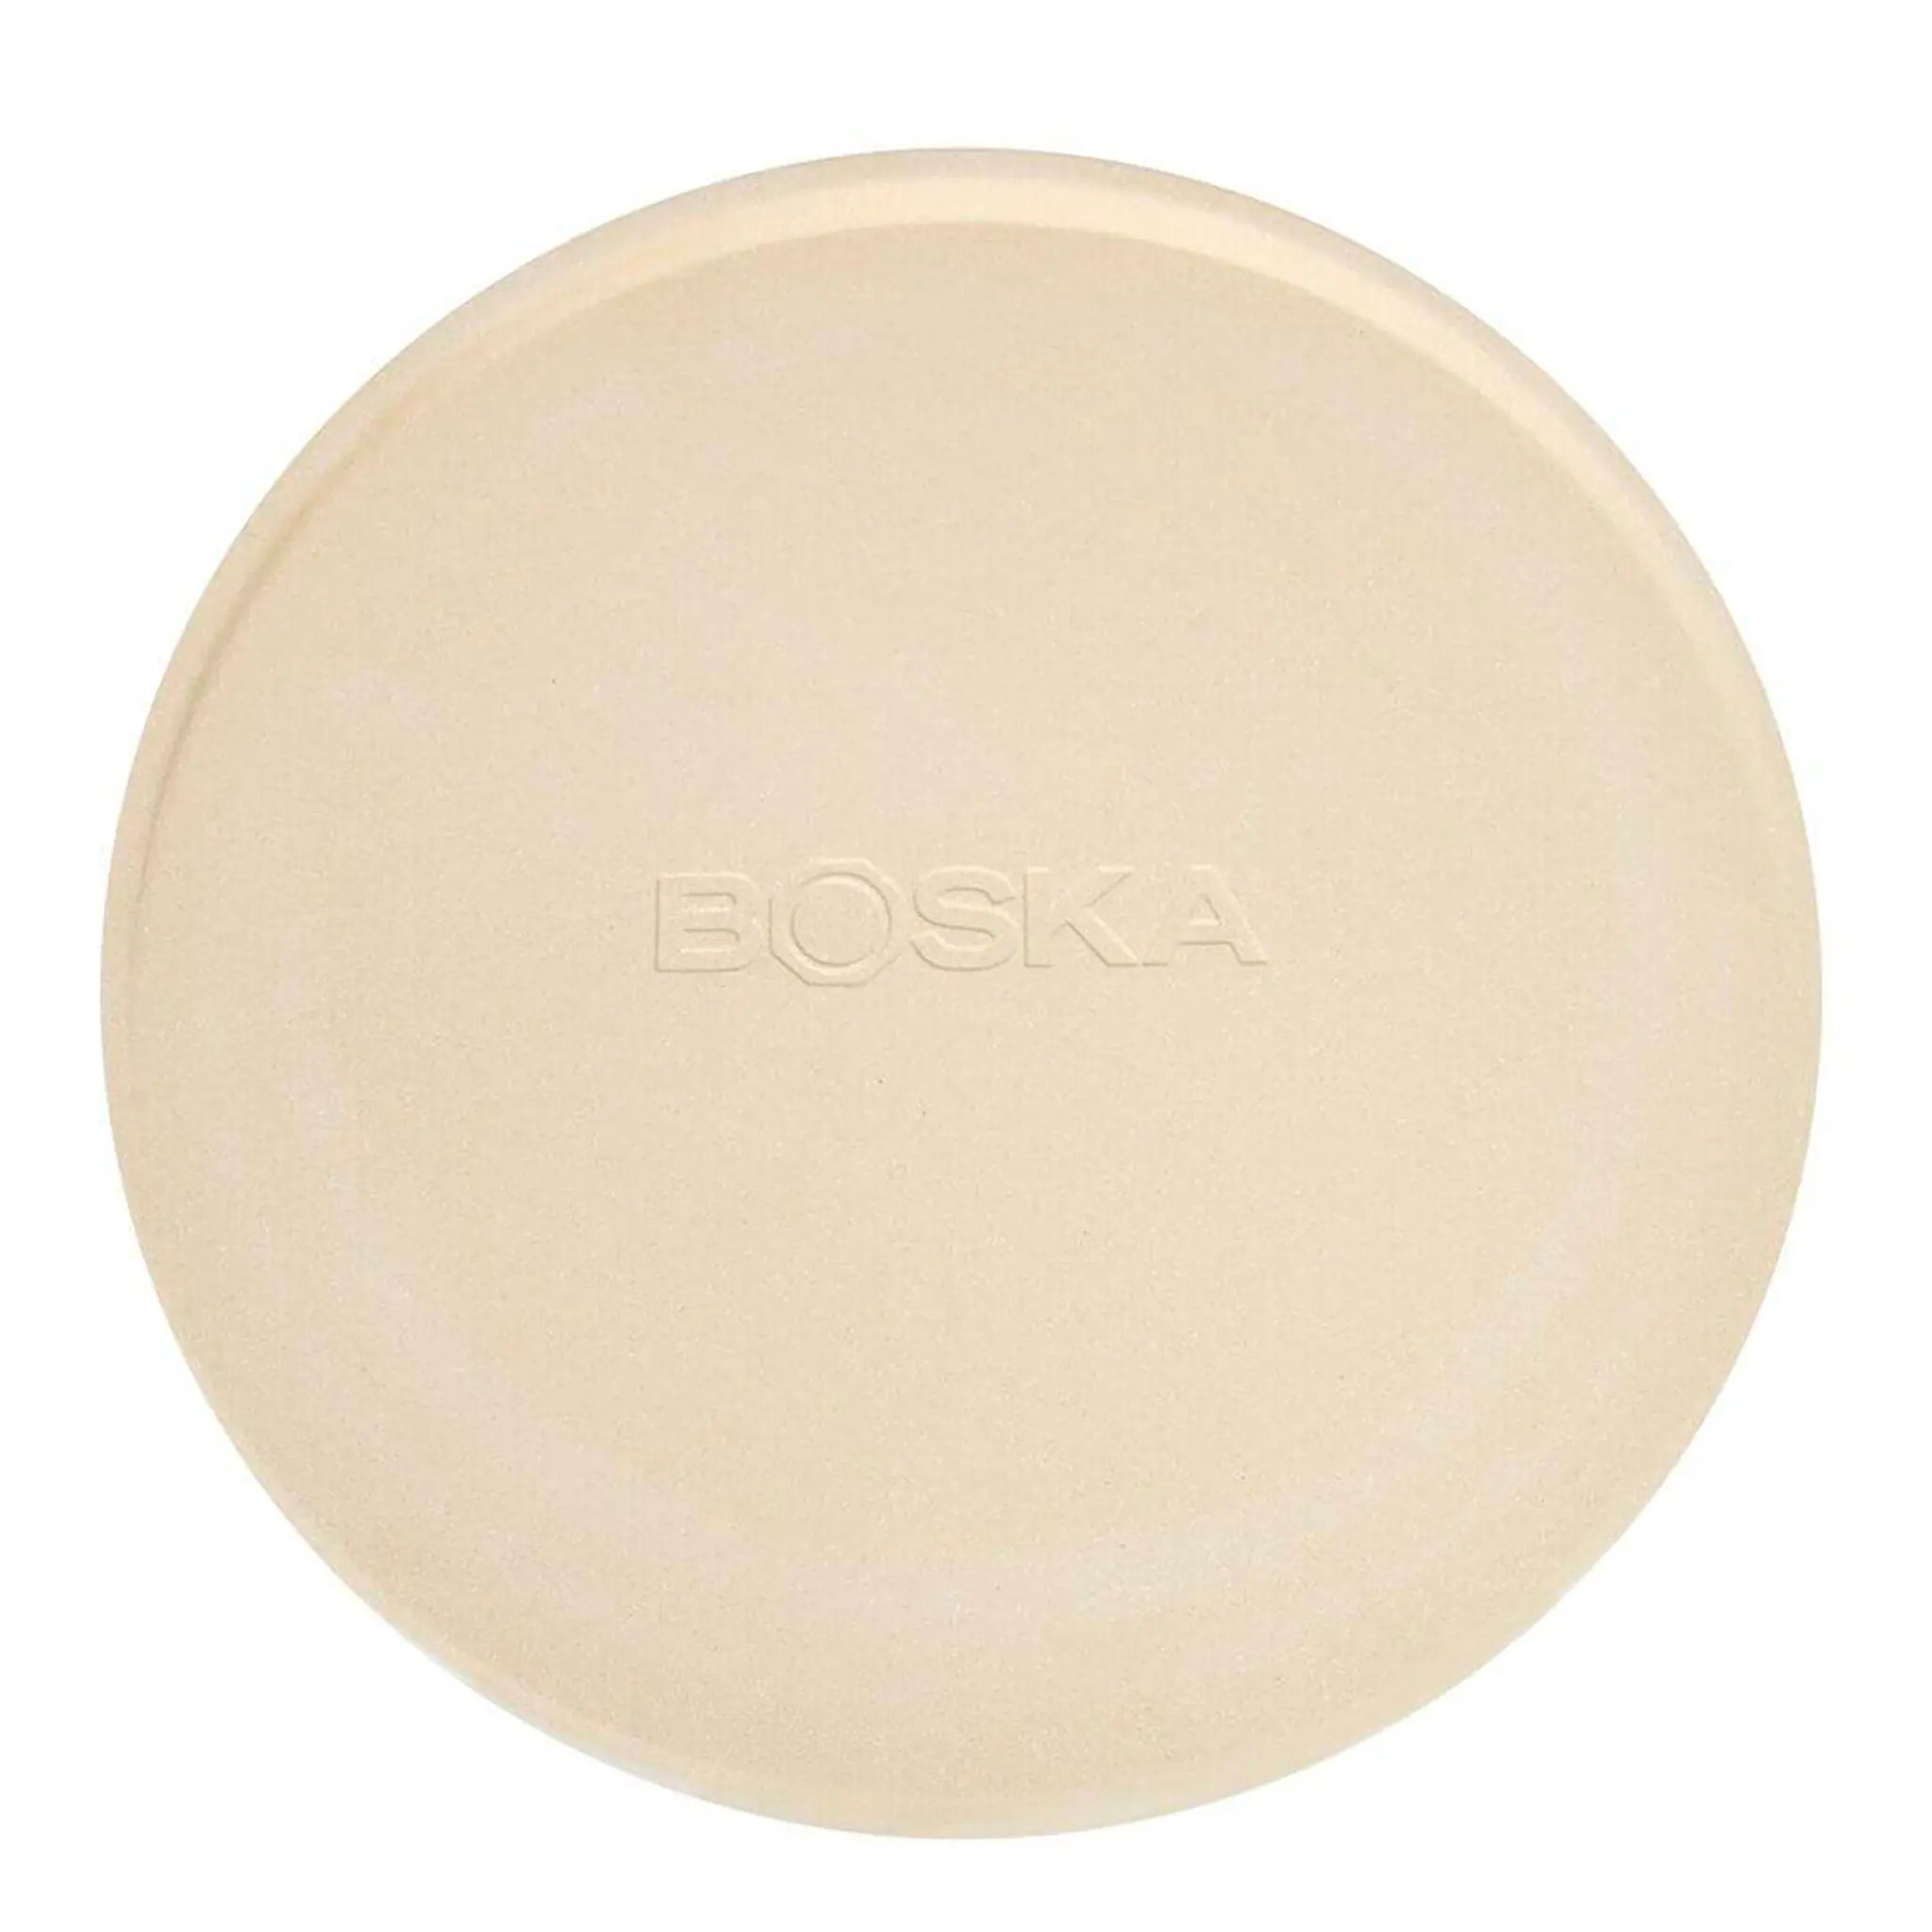 Boska Pizzawares exclusive pizzastein deluxe L